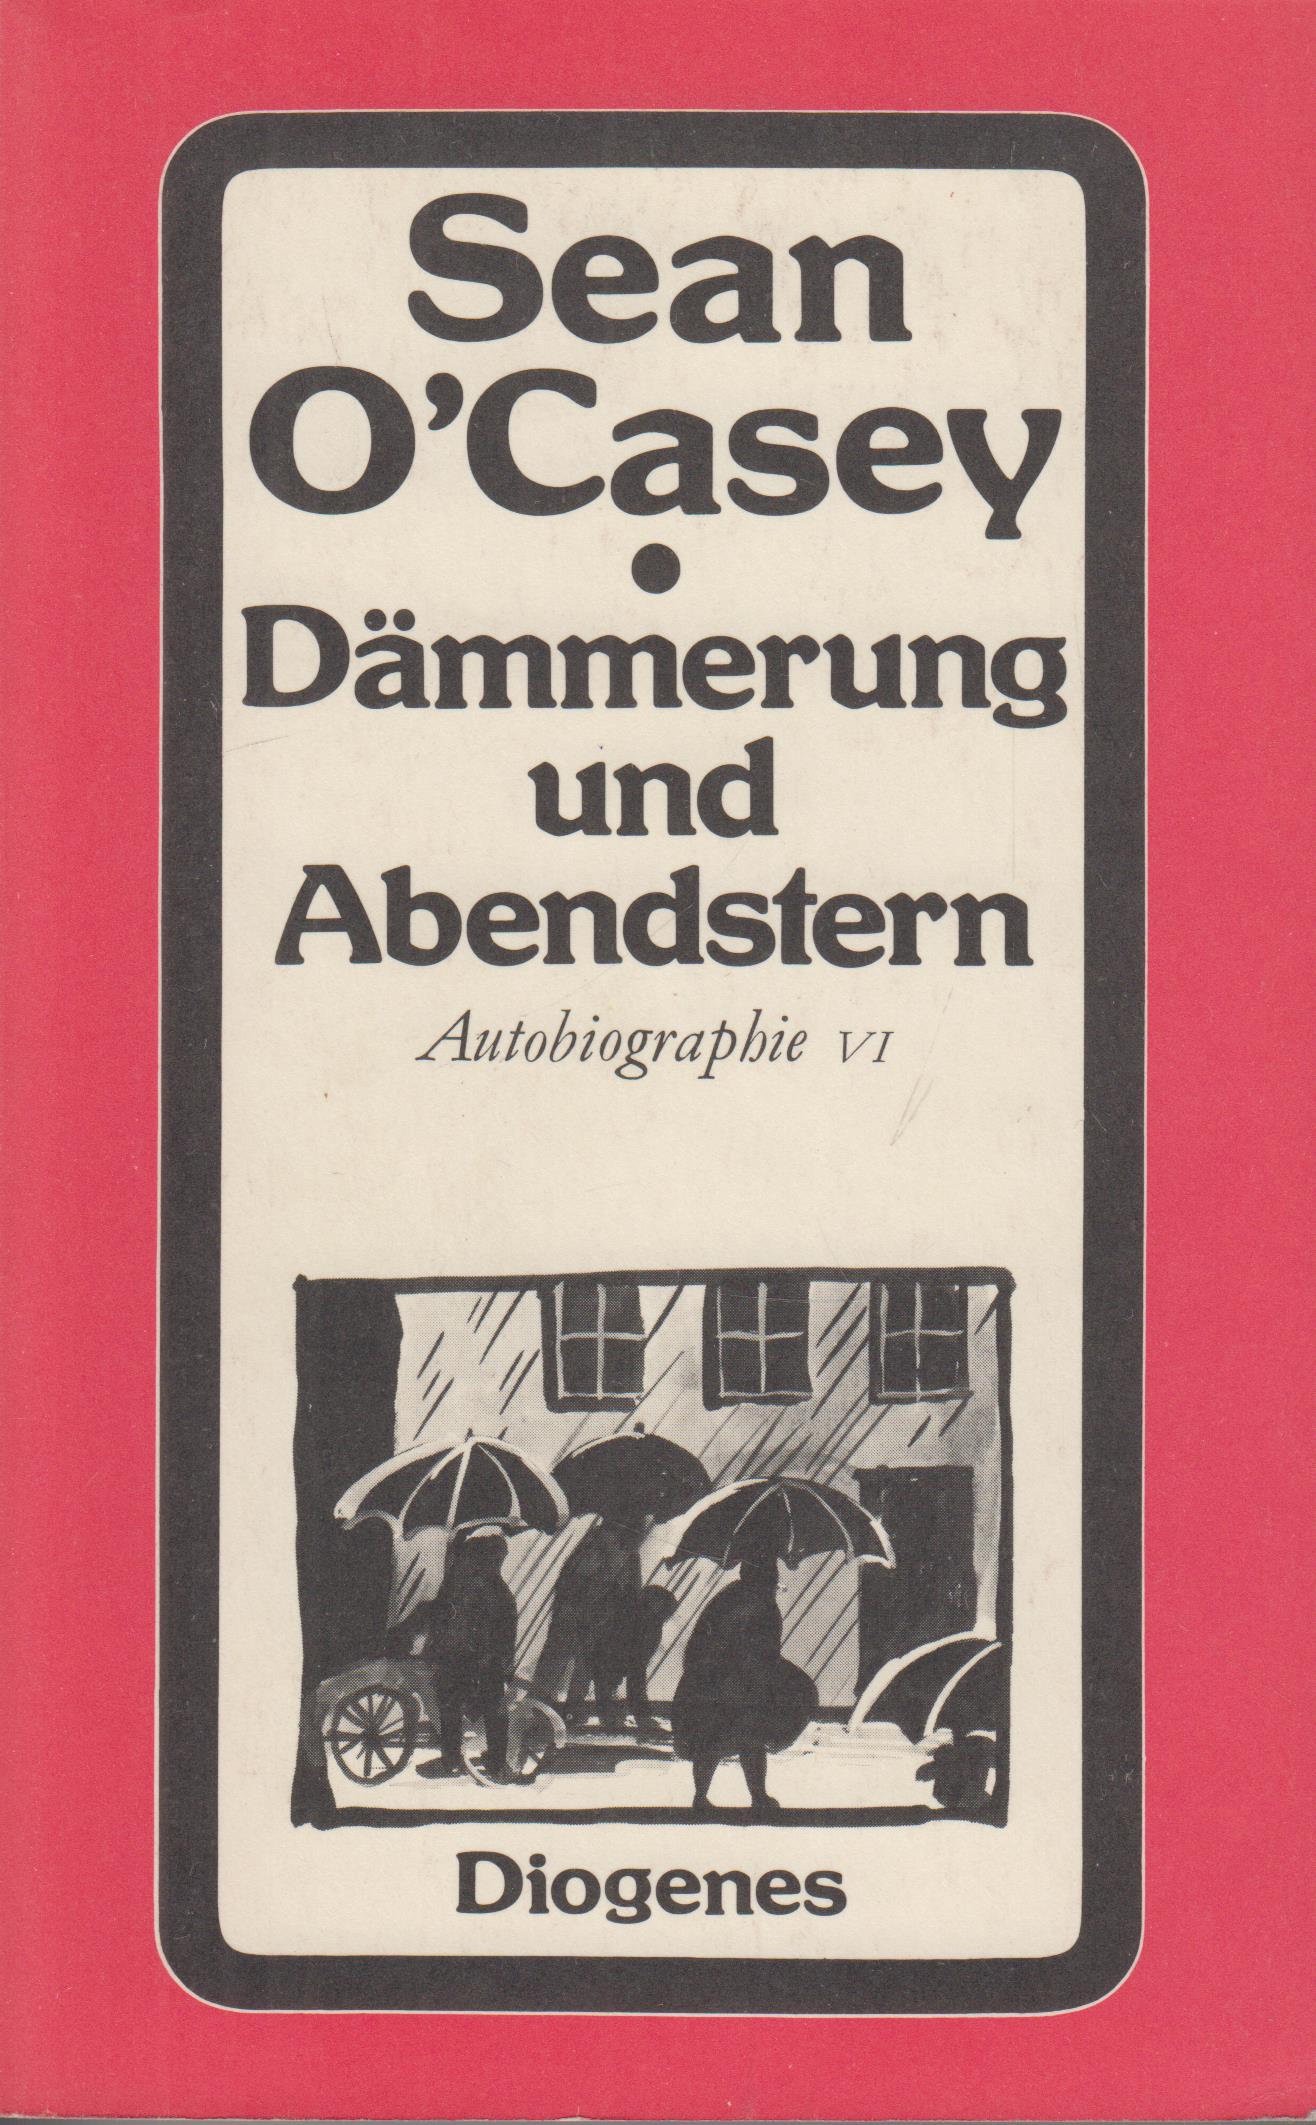 Dämmerung und Abendstern Autobiographie VI - O'Casey, Sean